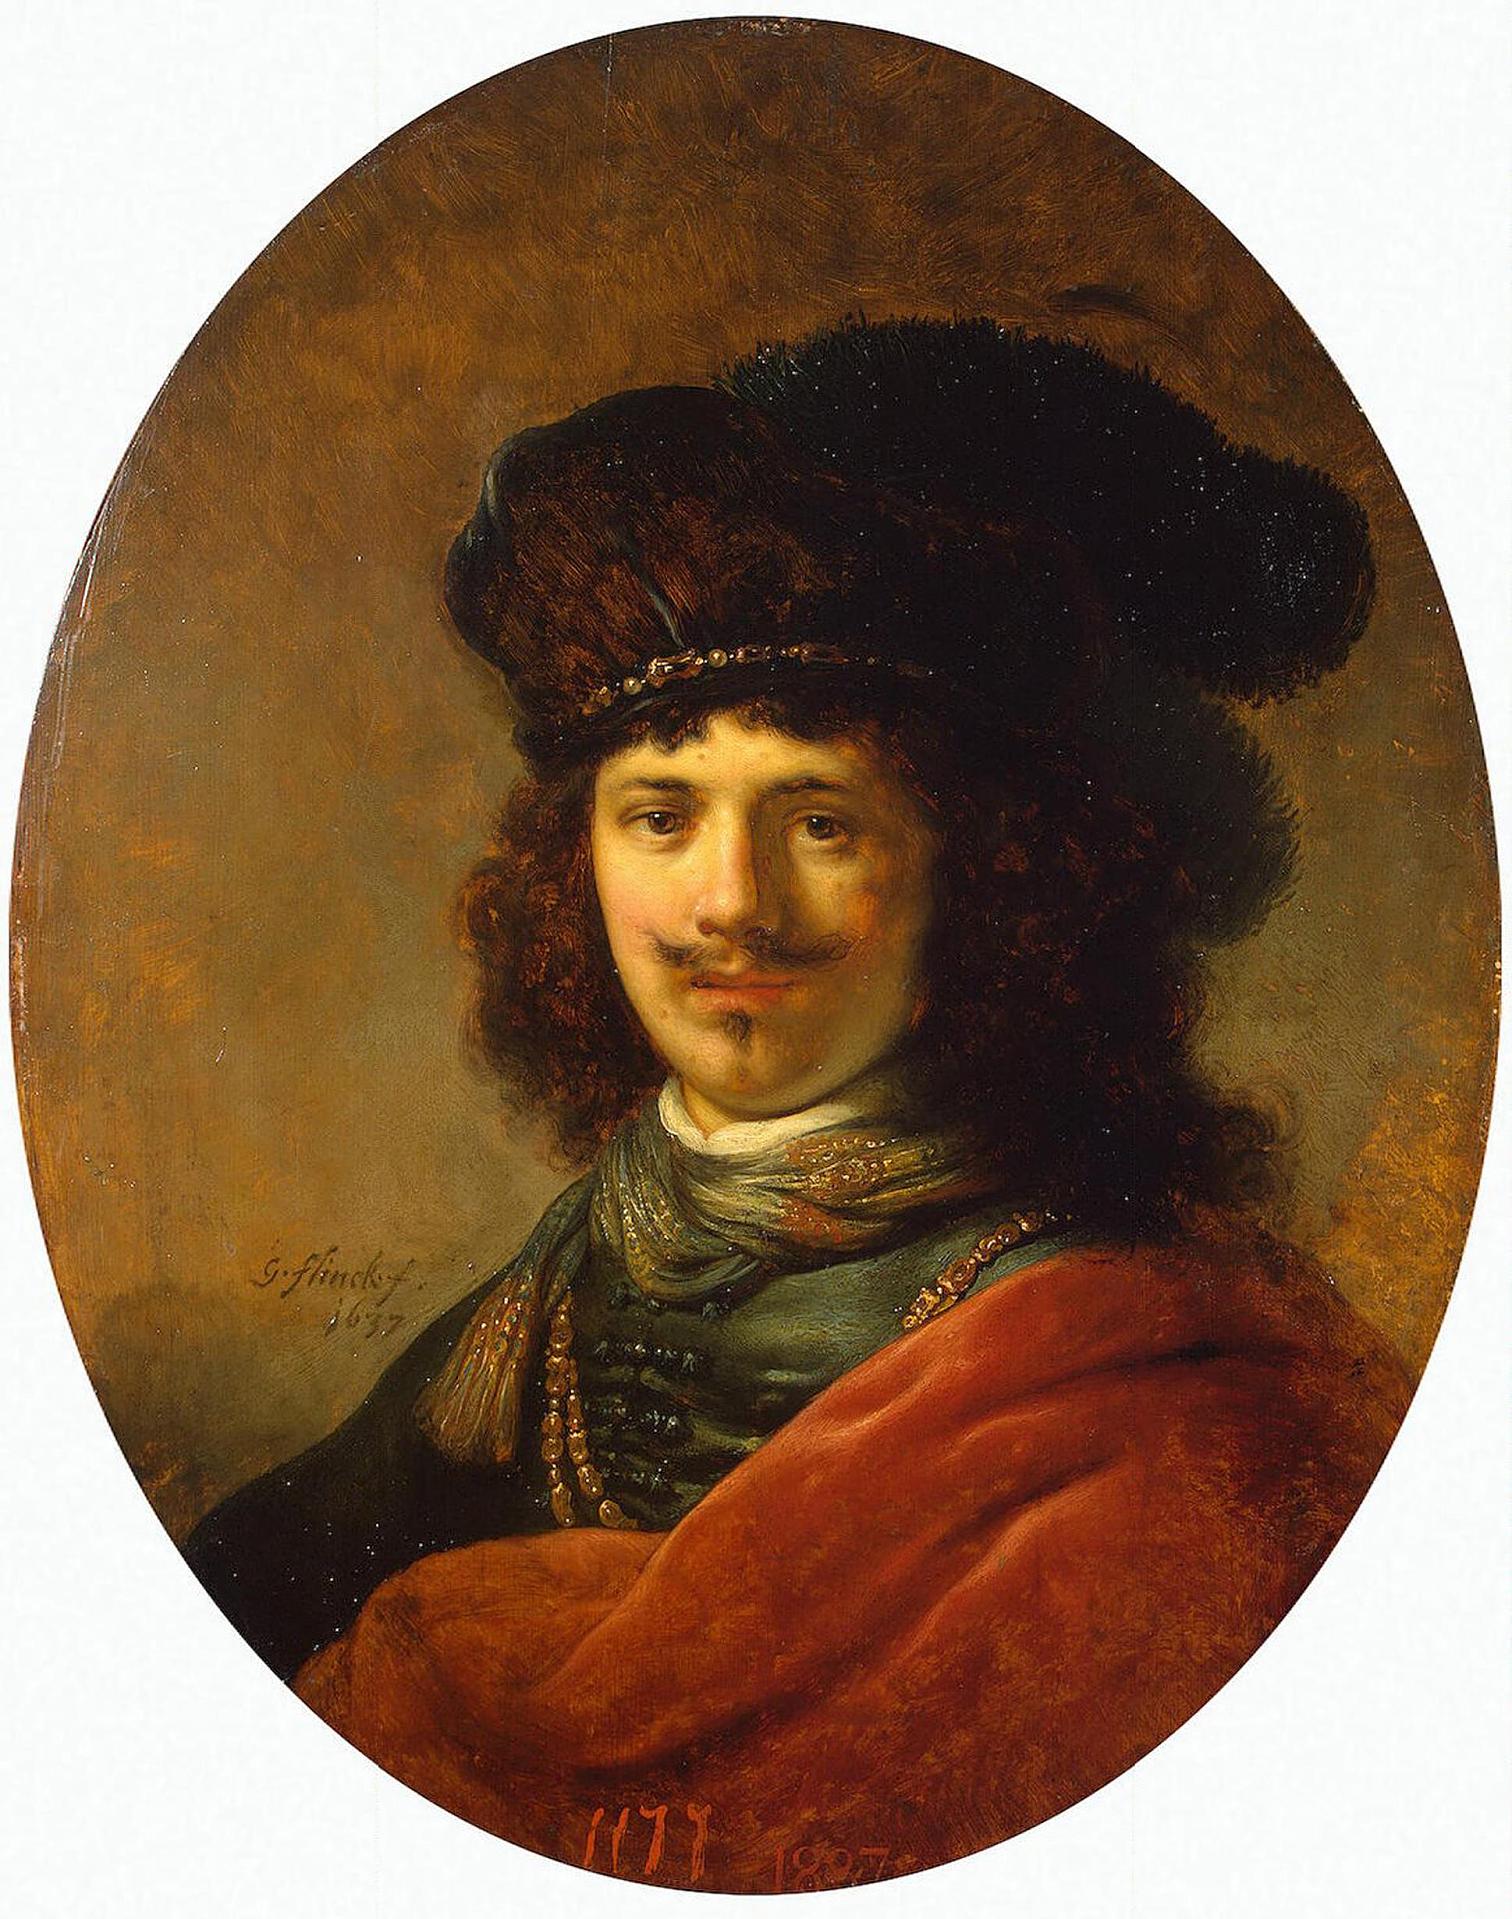 Говерт Флинк. "Портрет молодого человека". 1637. Эрмитаж, Санкт-Петербург.